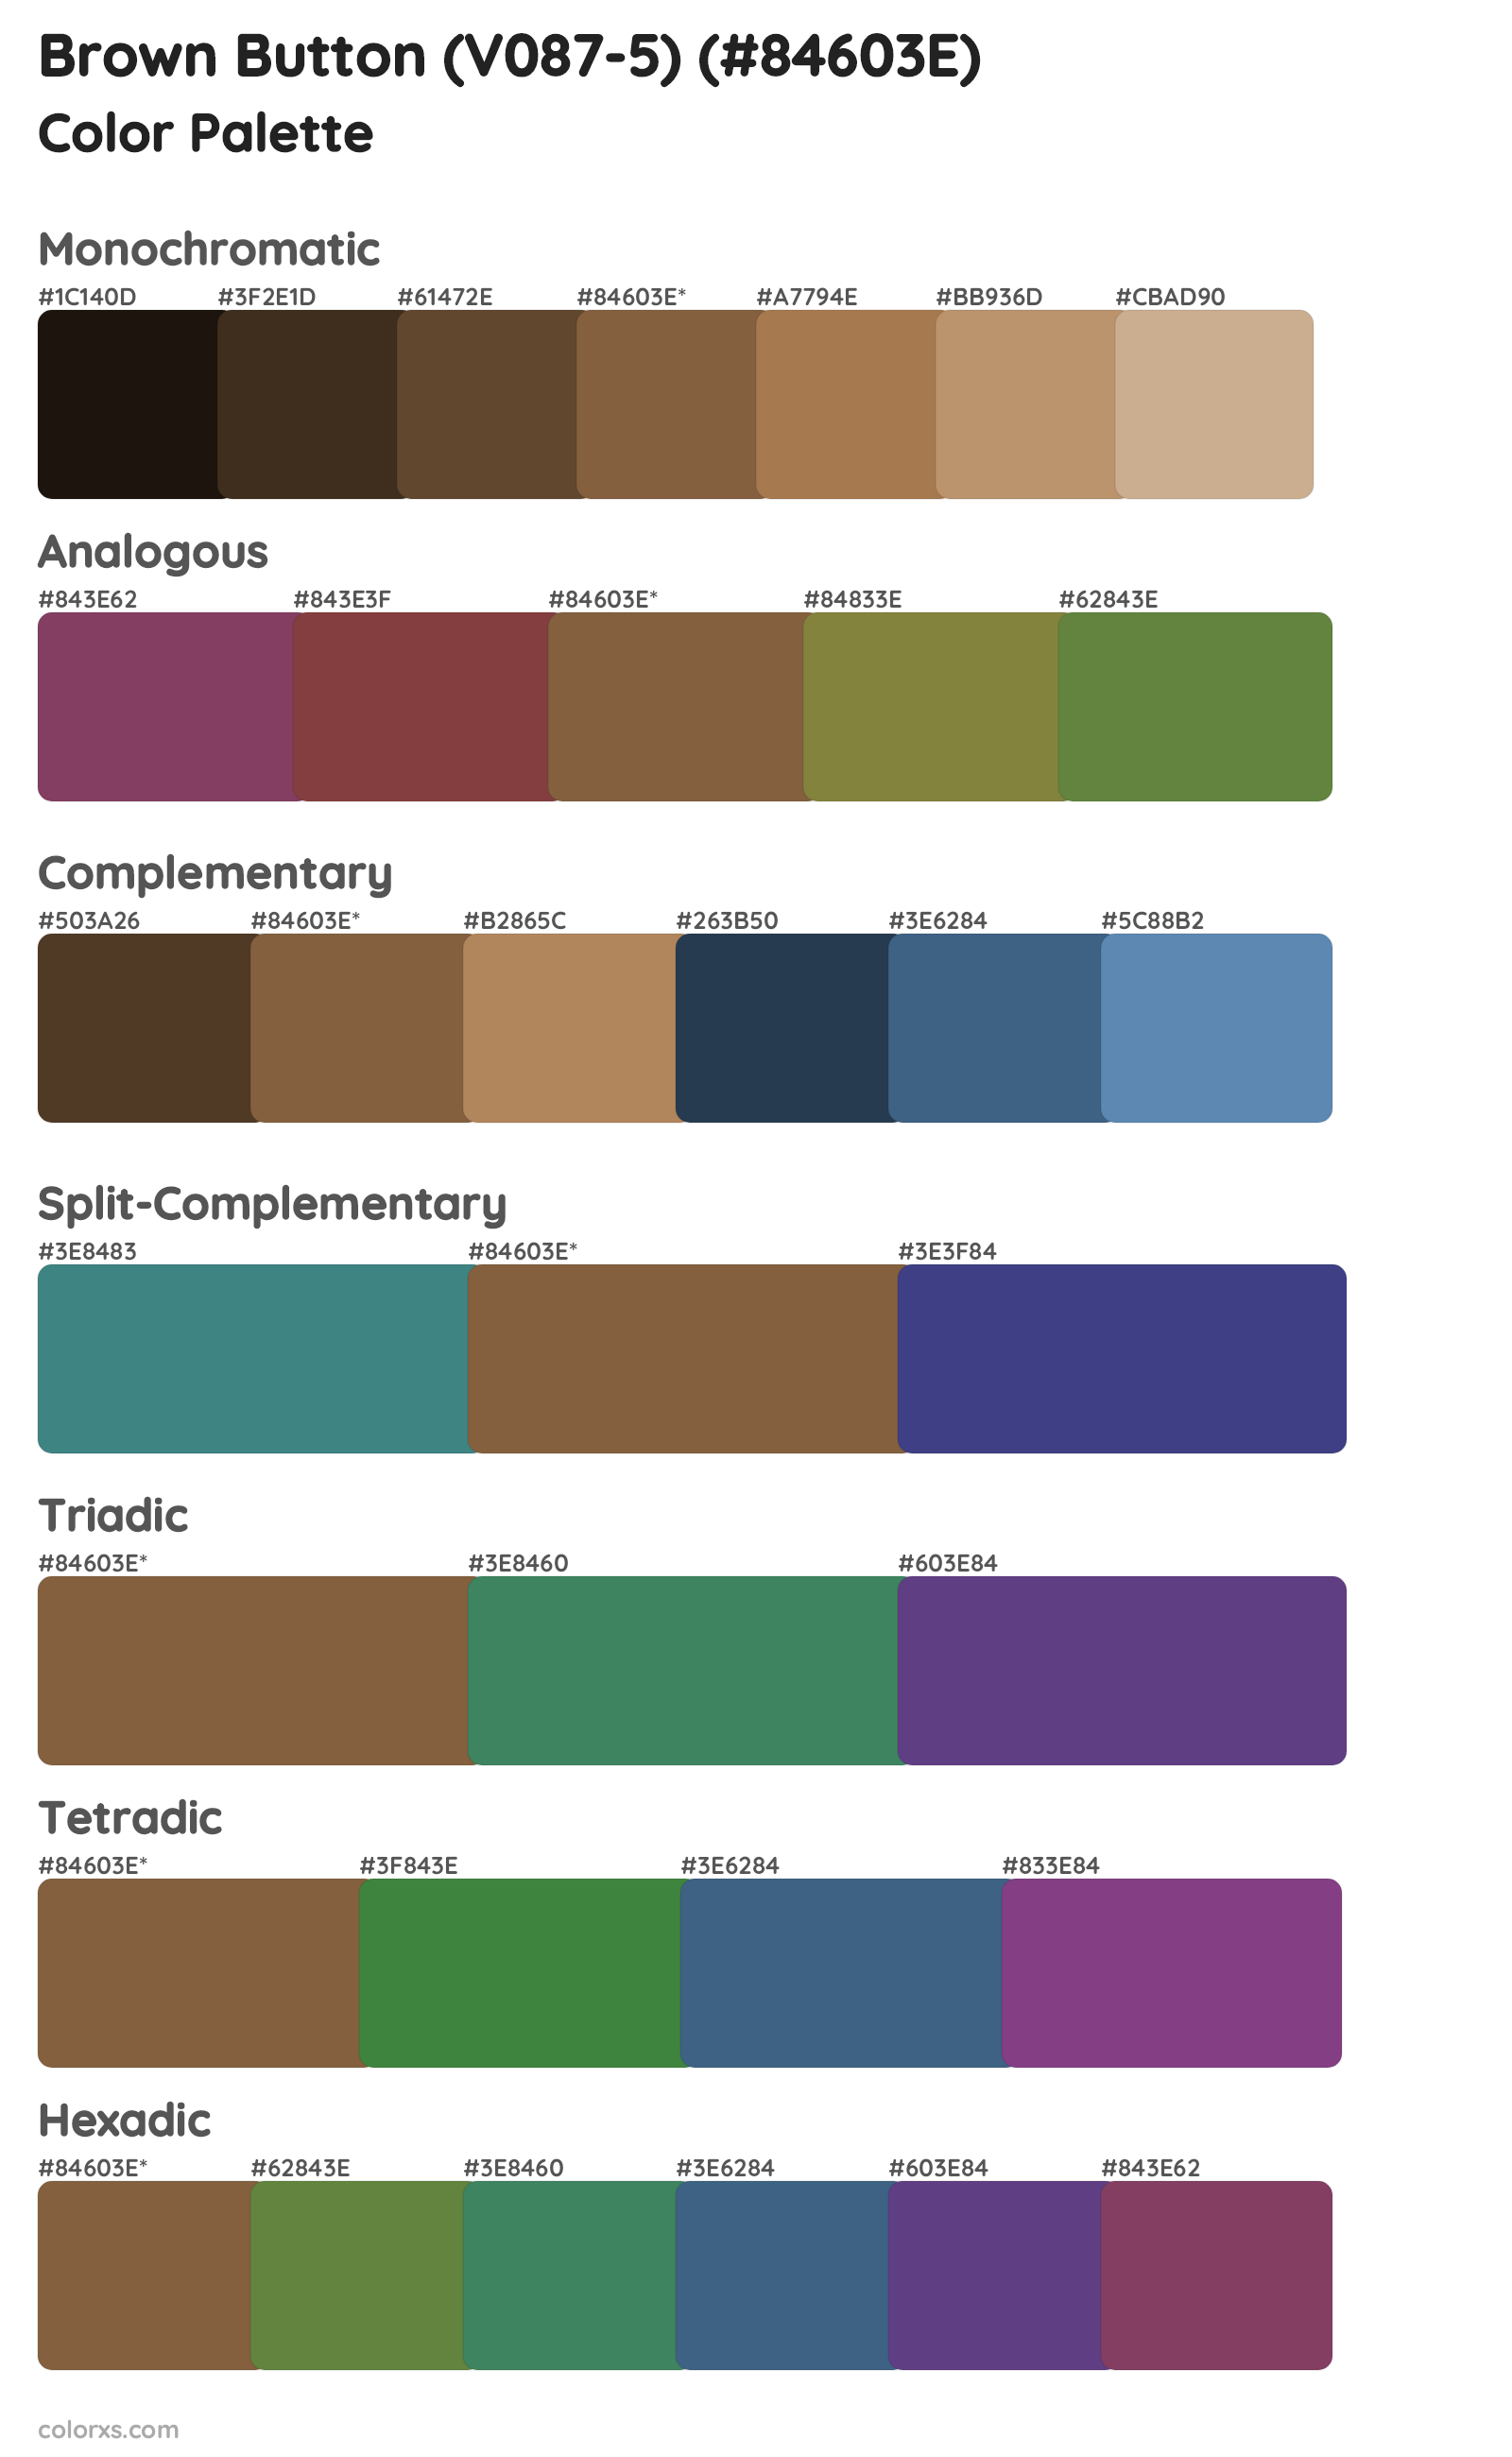 Brown Button (V087-5) Color Scheme Palettes